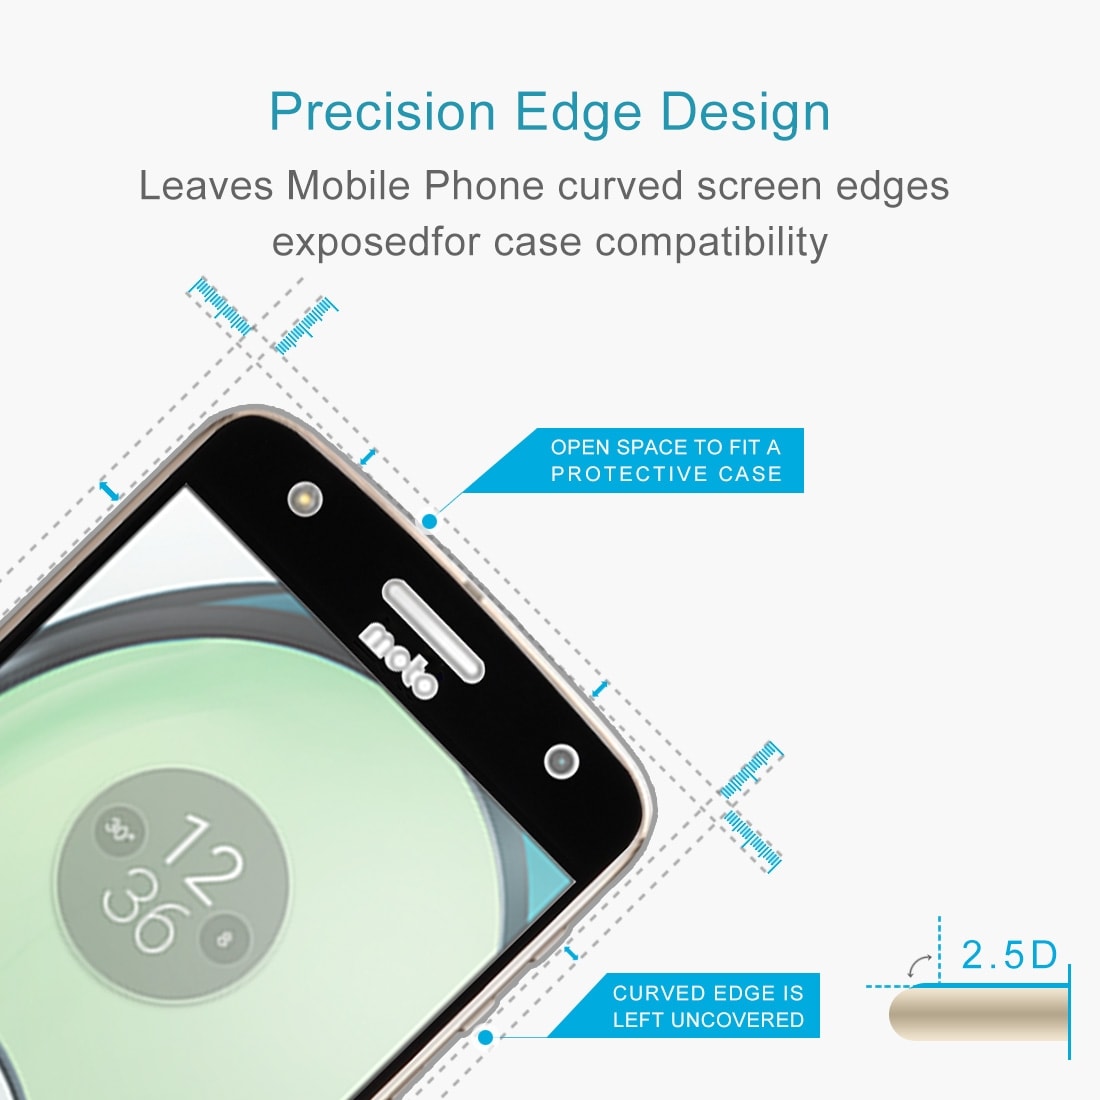 Skjermbeskyttelse av herdet glass Motorola Moto Z Play - Fullskjermbeskyttelse